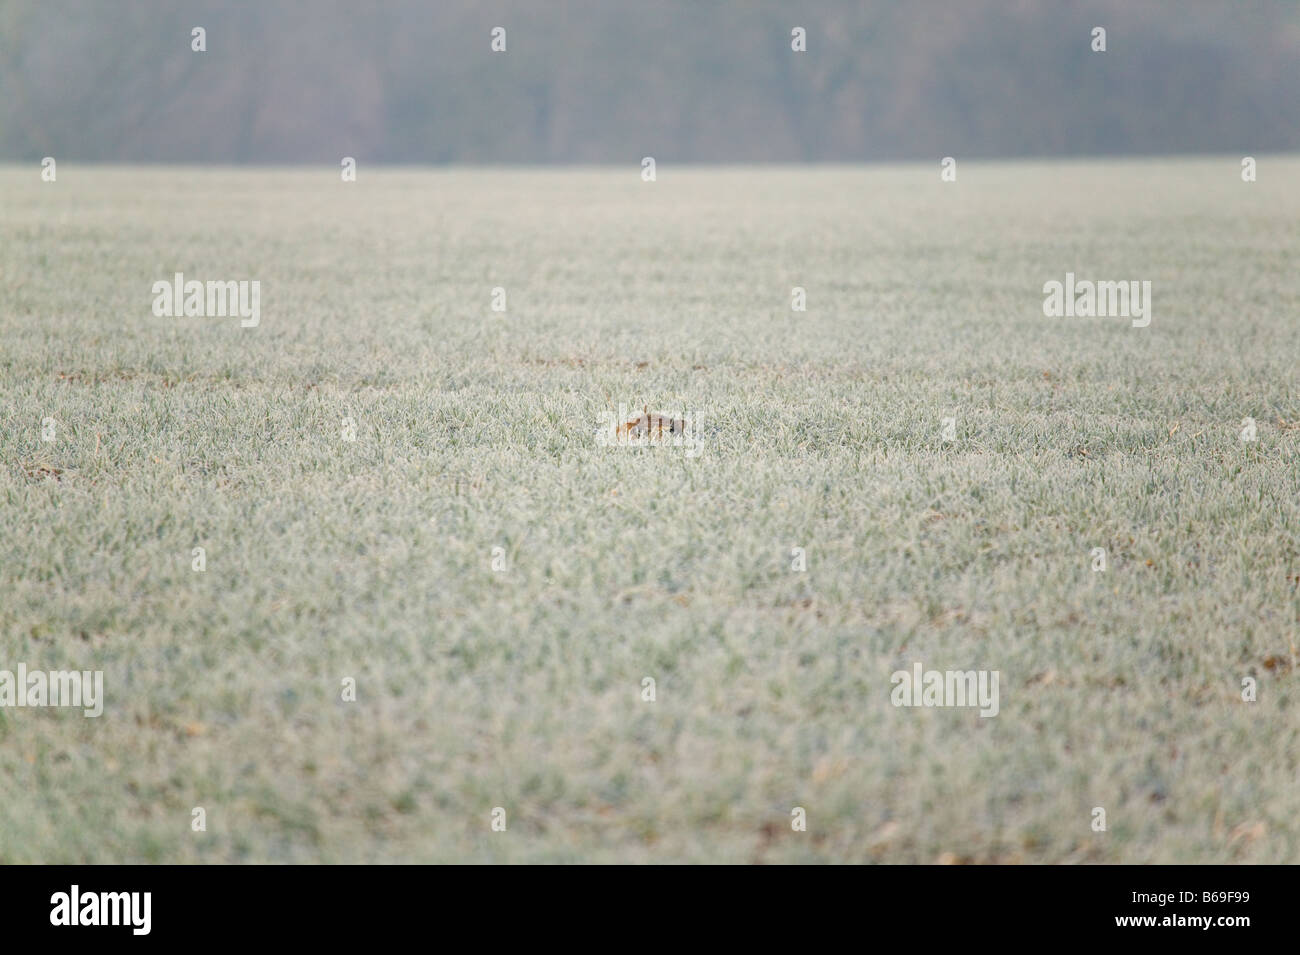 Un lièvre brun Lepus europeaus couché dans il s forme au milieu d'un champ couvert de givre s'ouvrir grand les yeux à l'affût Banque D'Images